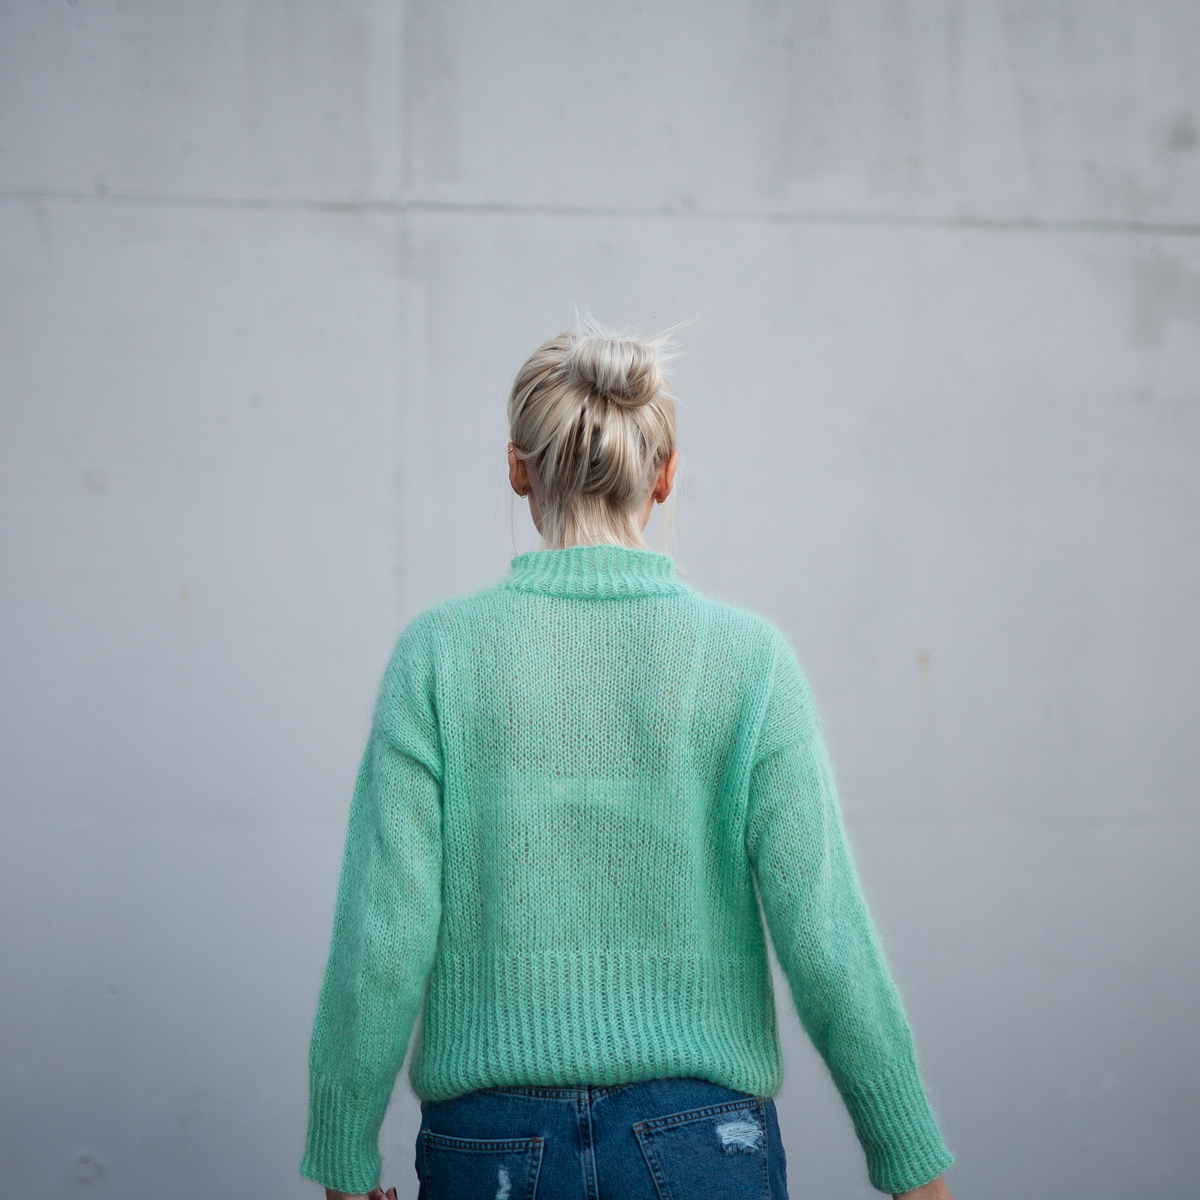  - Elvira Sweater | Turtleneck sweater women knitting kit - by HipKnitShop - 03/09/2018